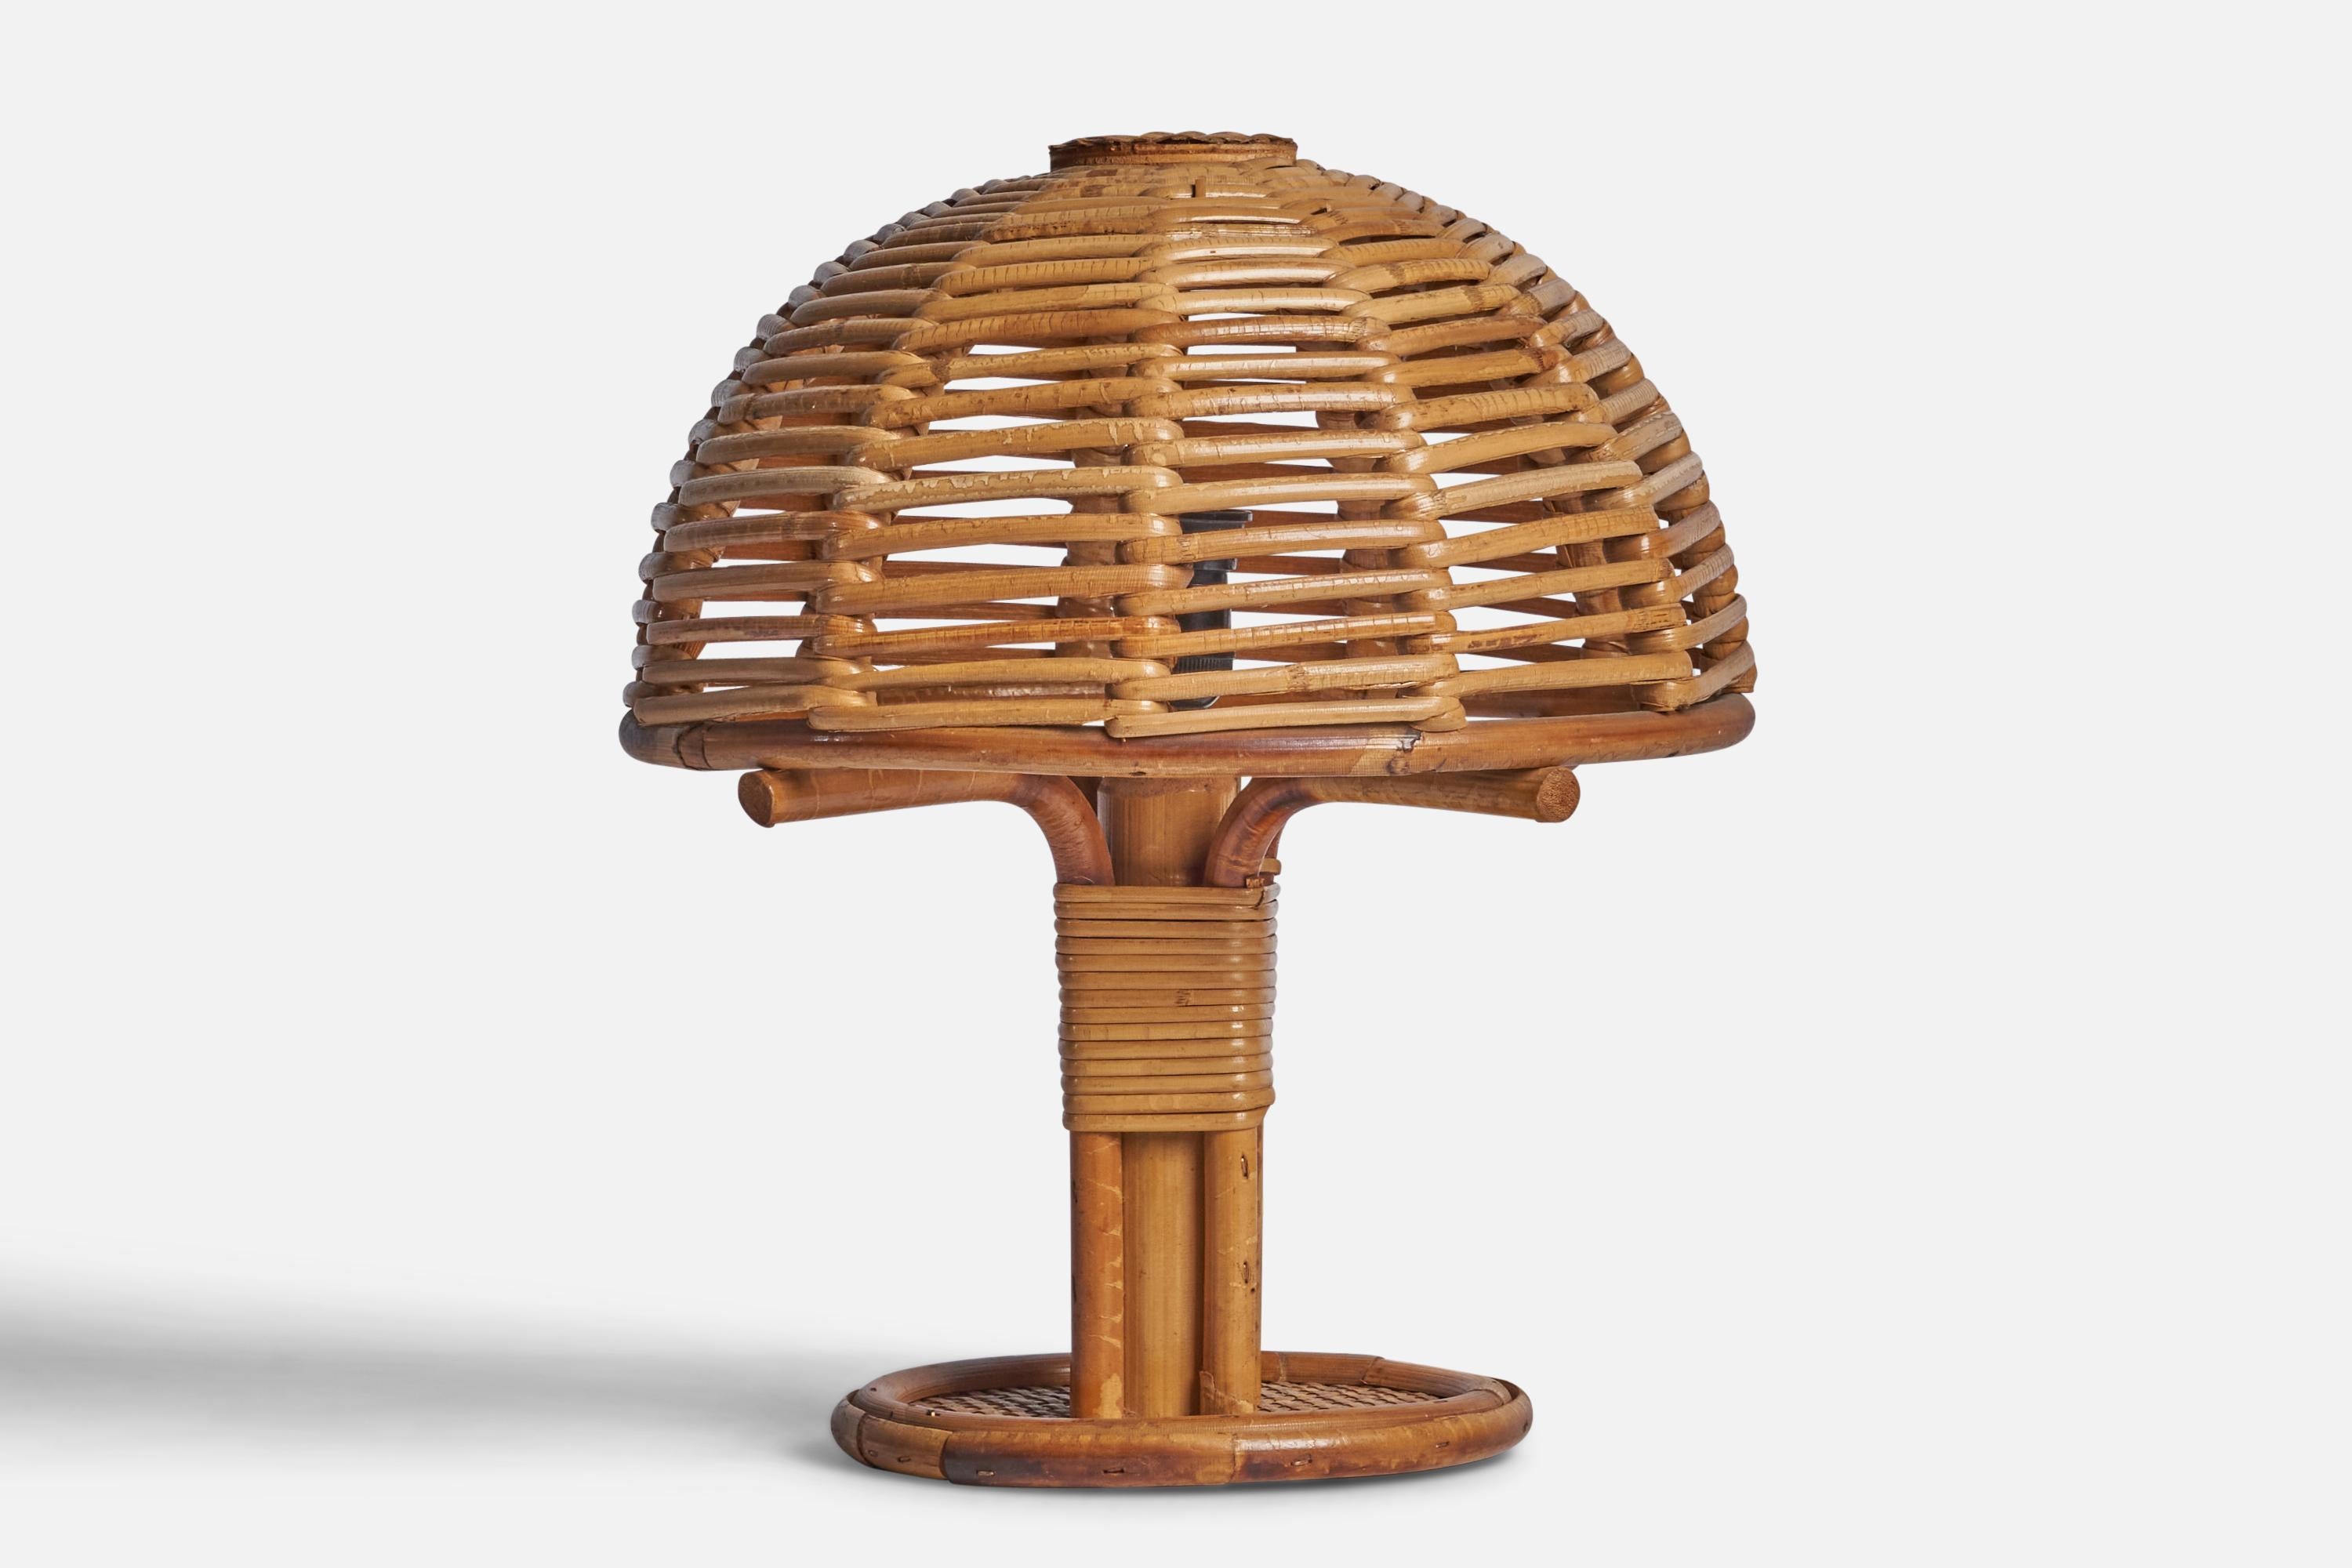 Lampe de table en bambou moulé et rotin, conçue et produite en Italie, années 1970.

Dimensions globales (pouces) : 11.5